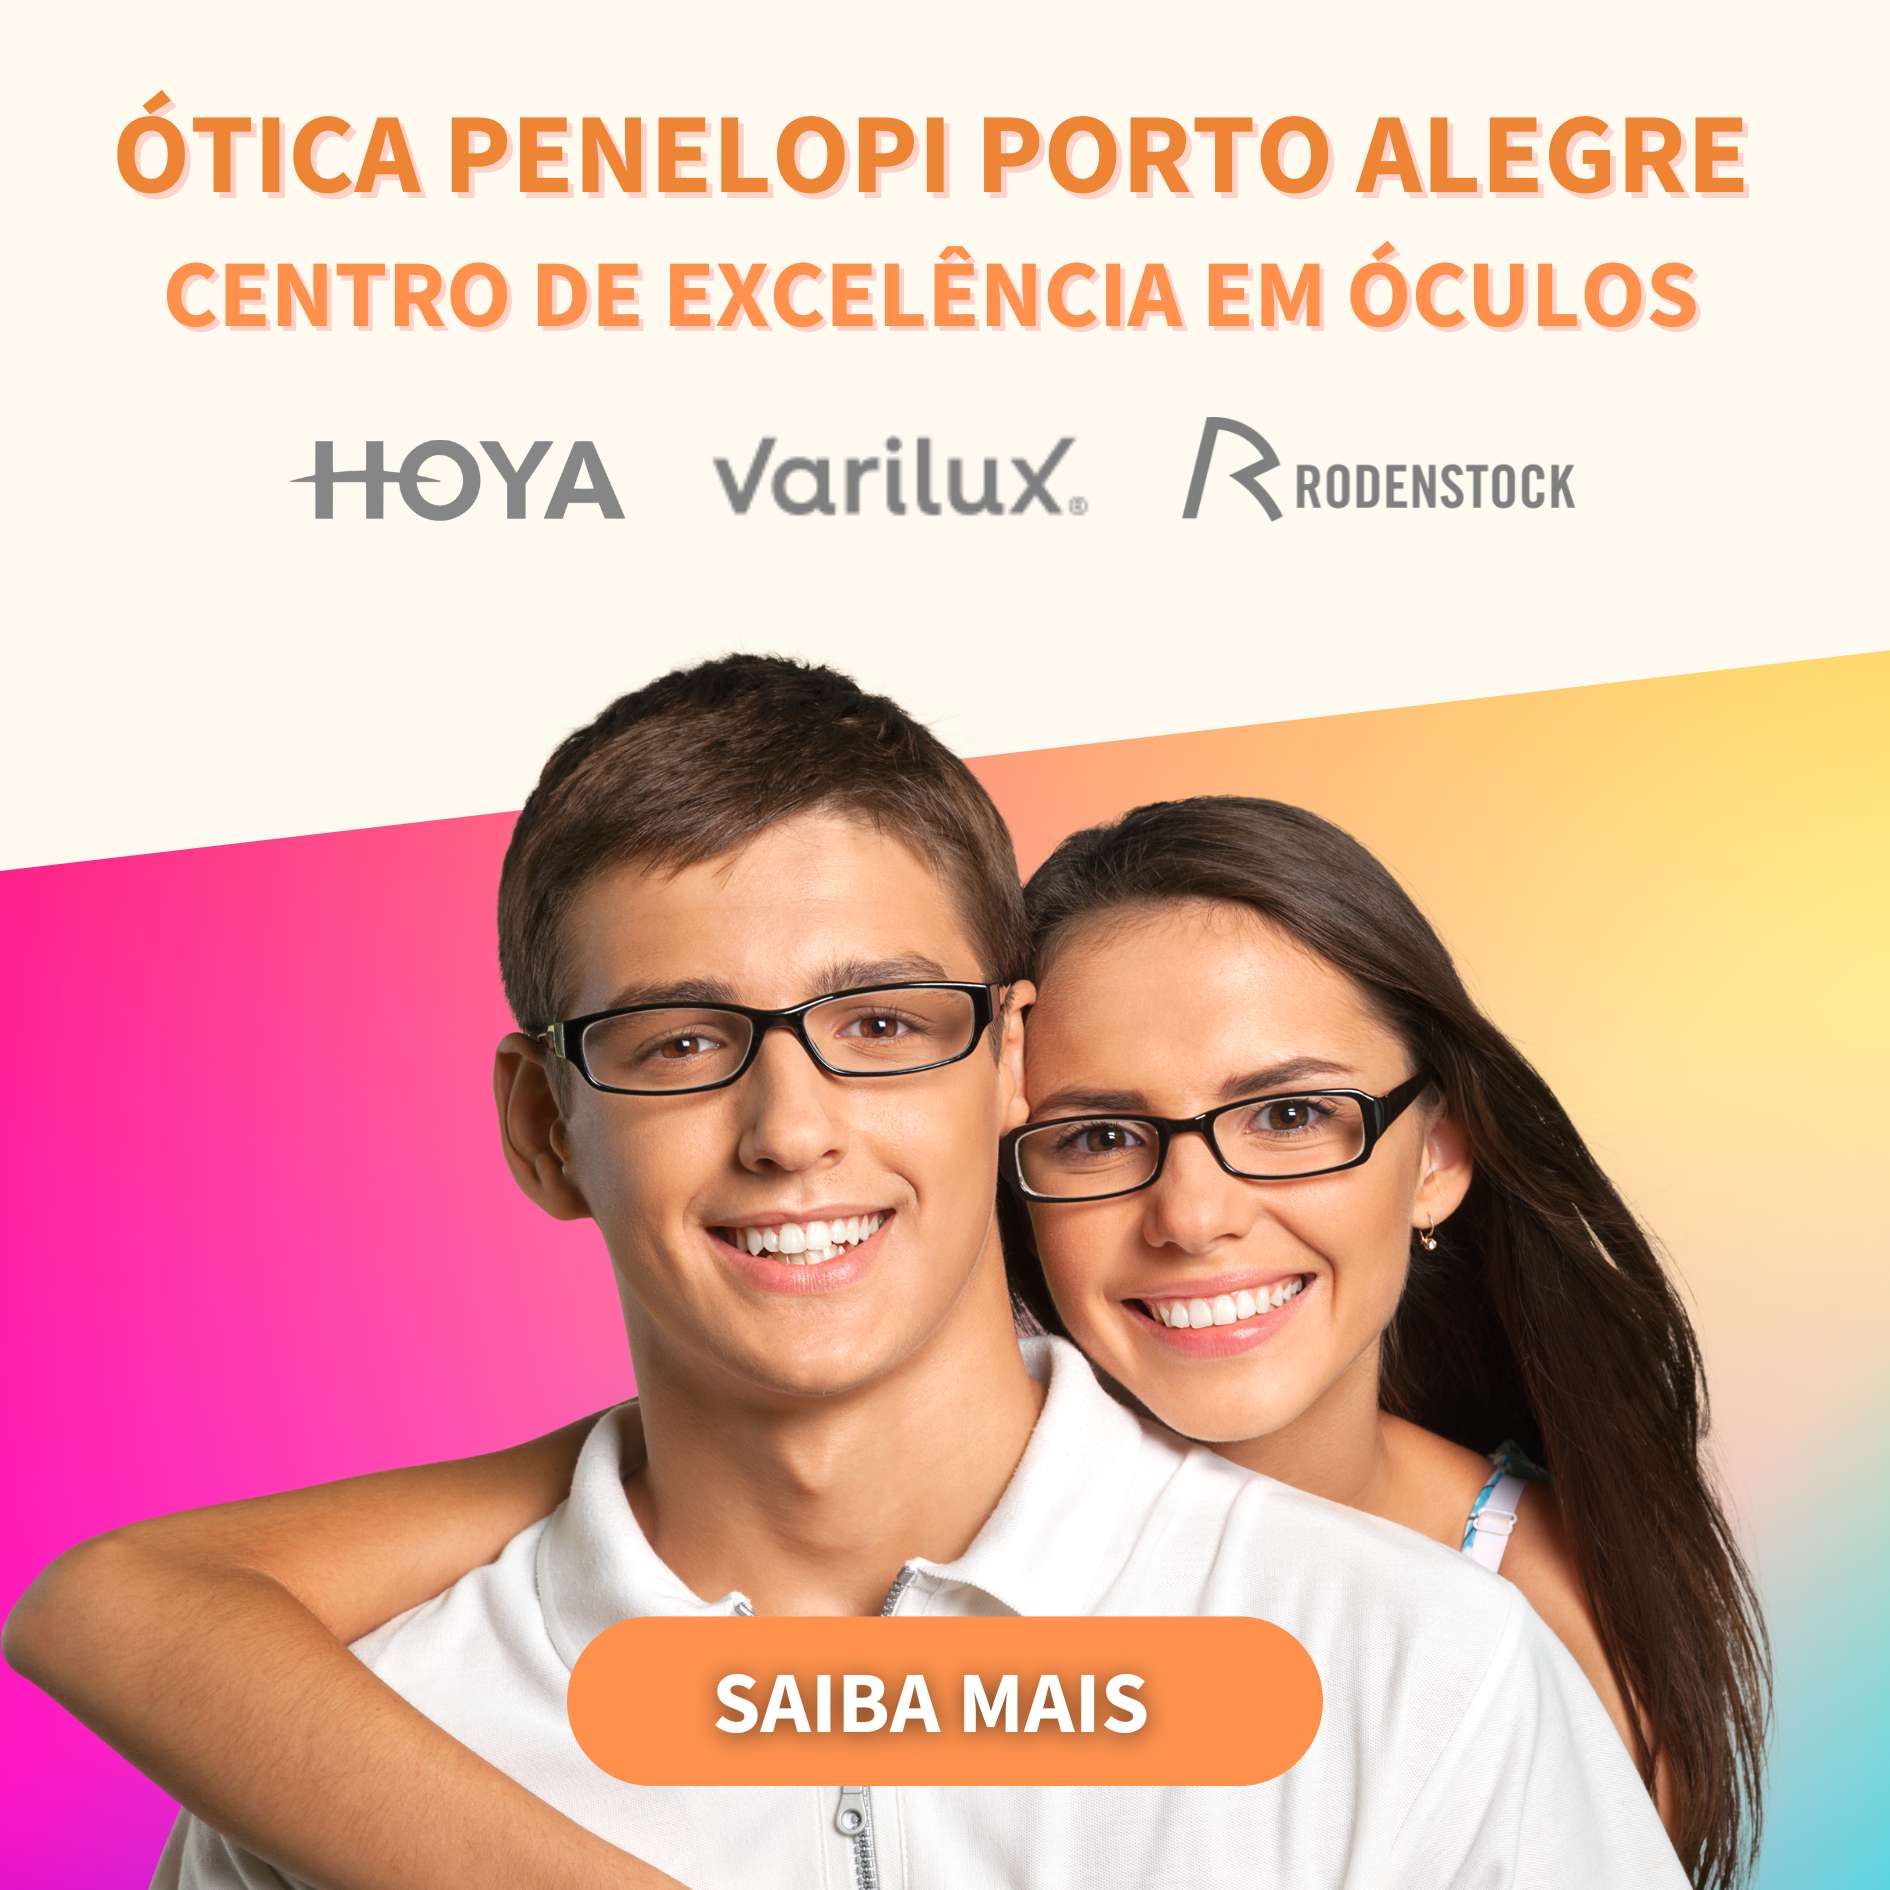 Penelopi - Centro de Excelência em Óculos - Loja Porto Alegre